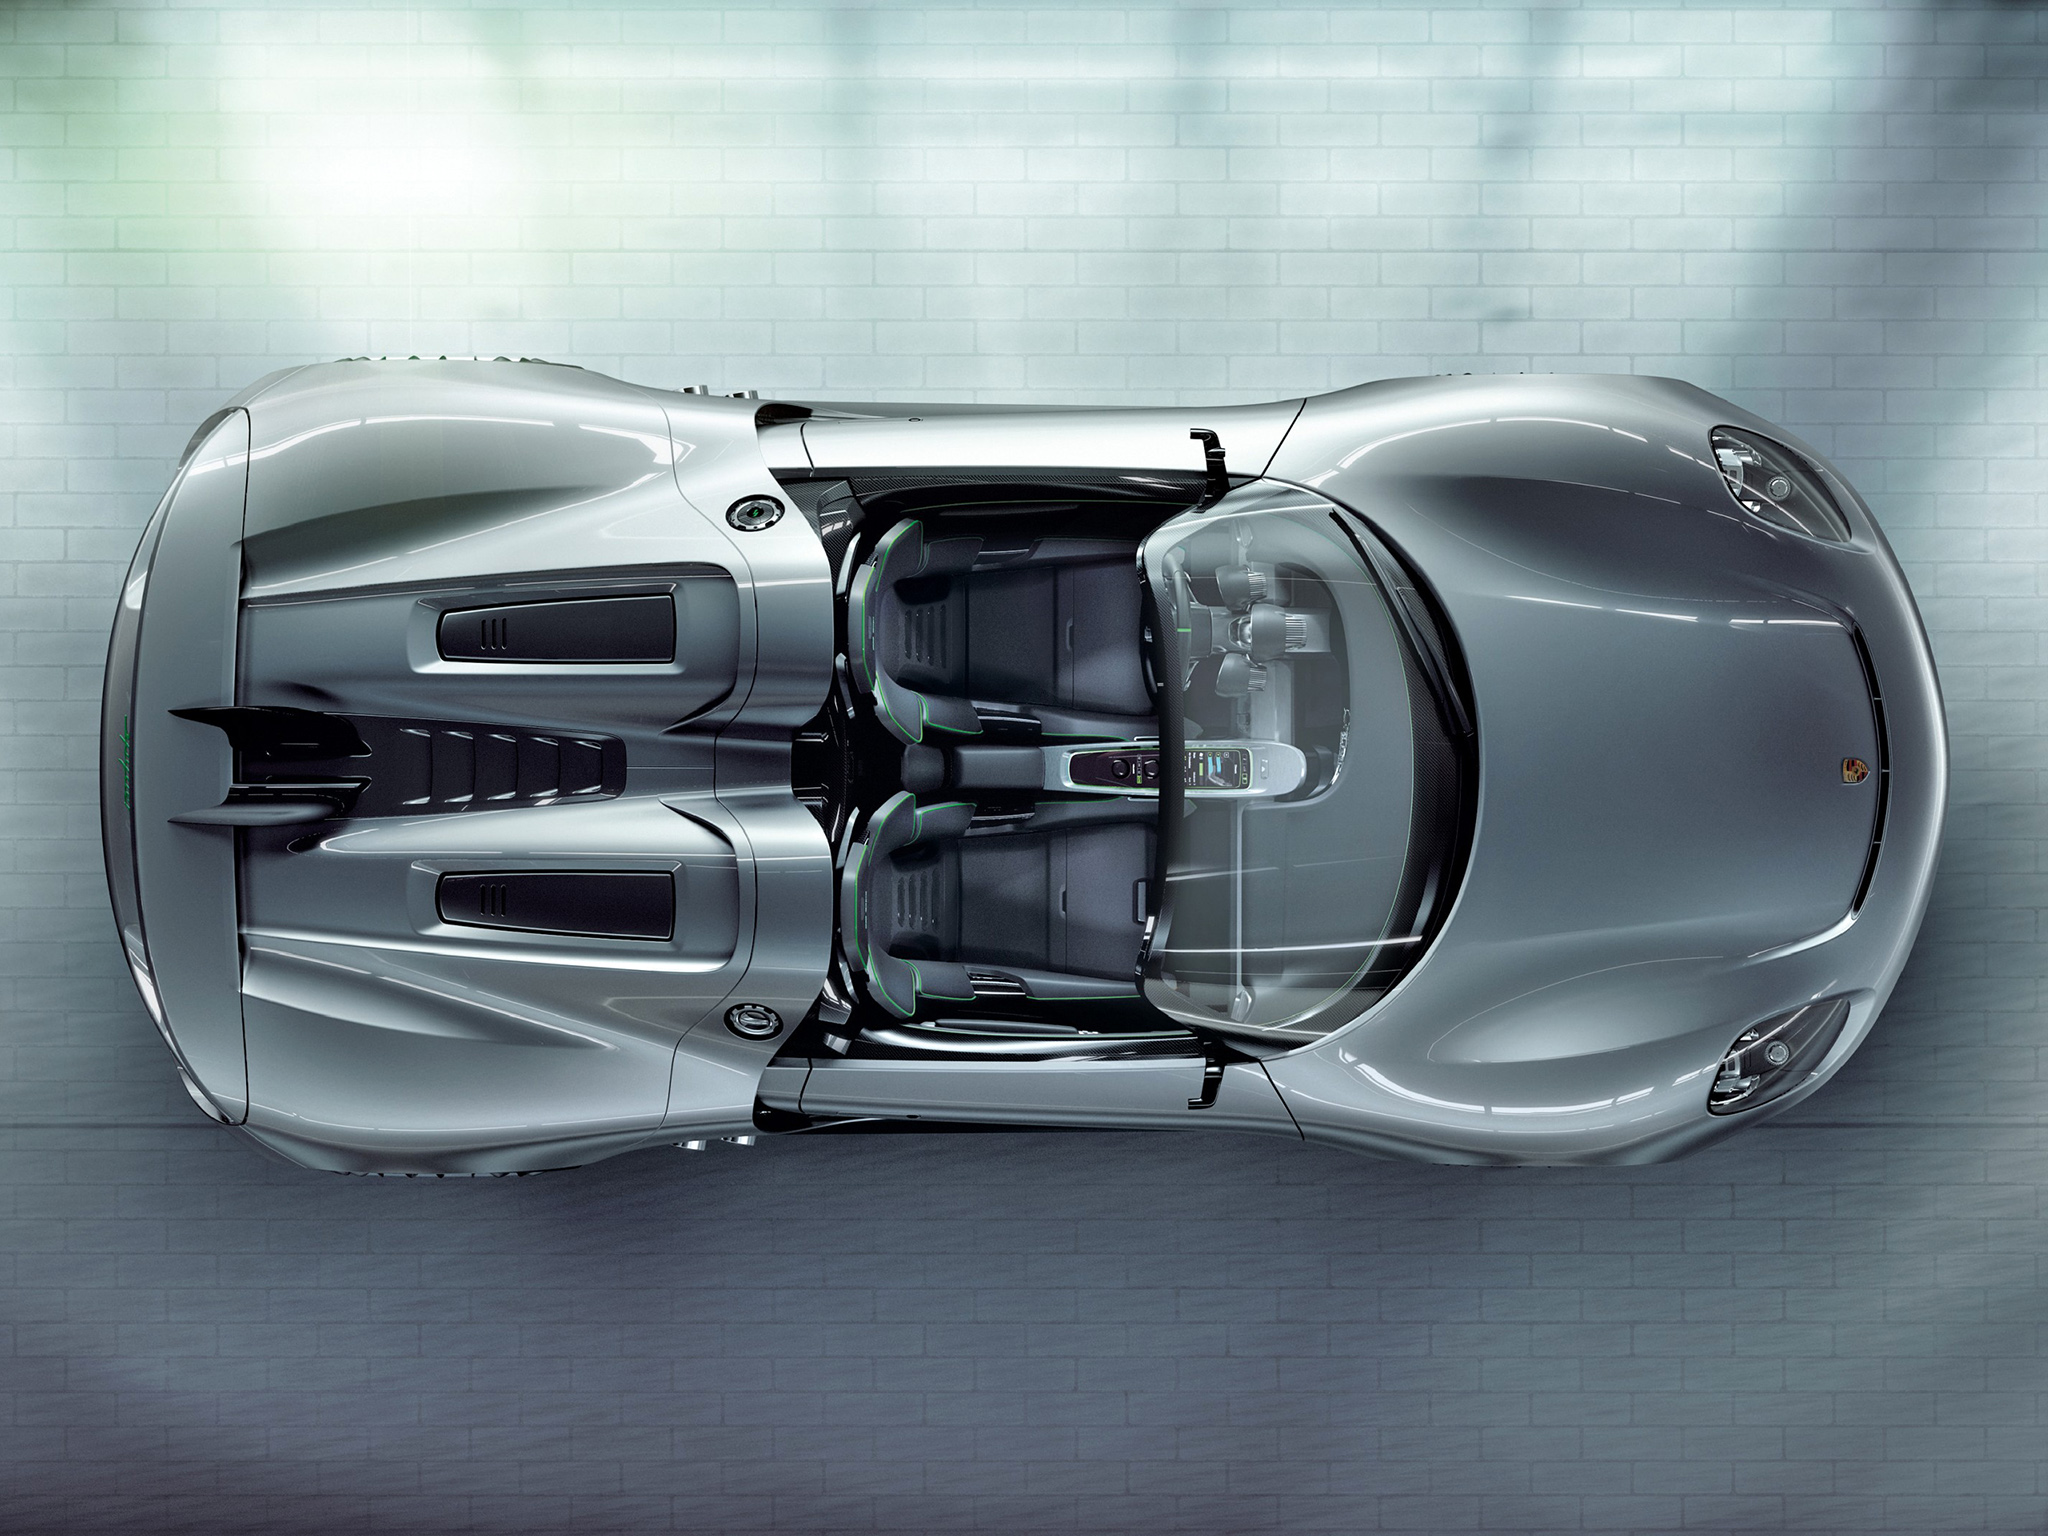 2010, Porsche, 918, Spyder, Concept, Supercar, Supercars, Interior Wallpaper